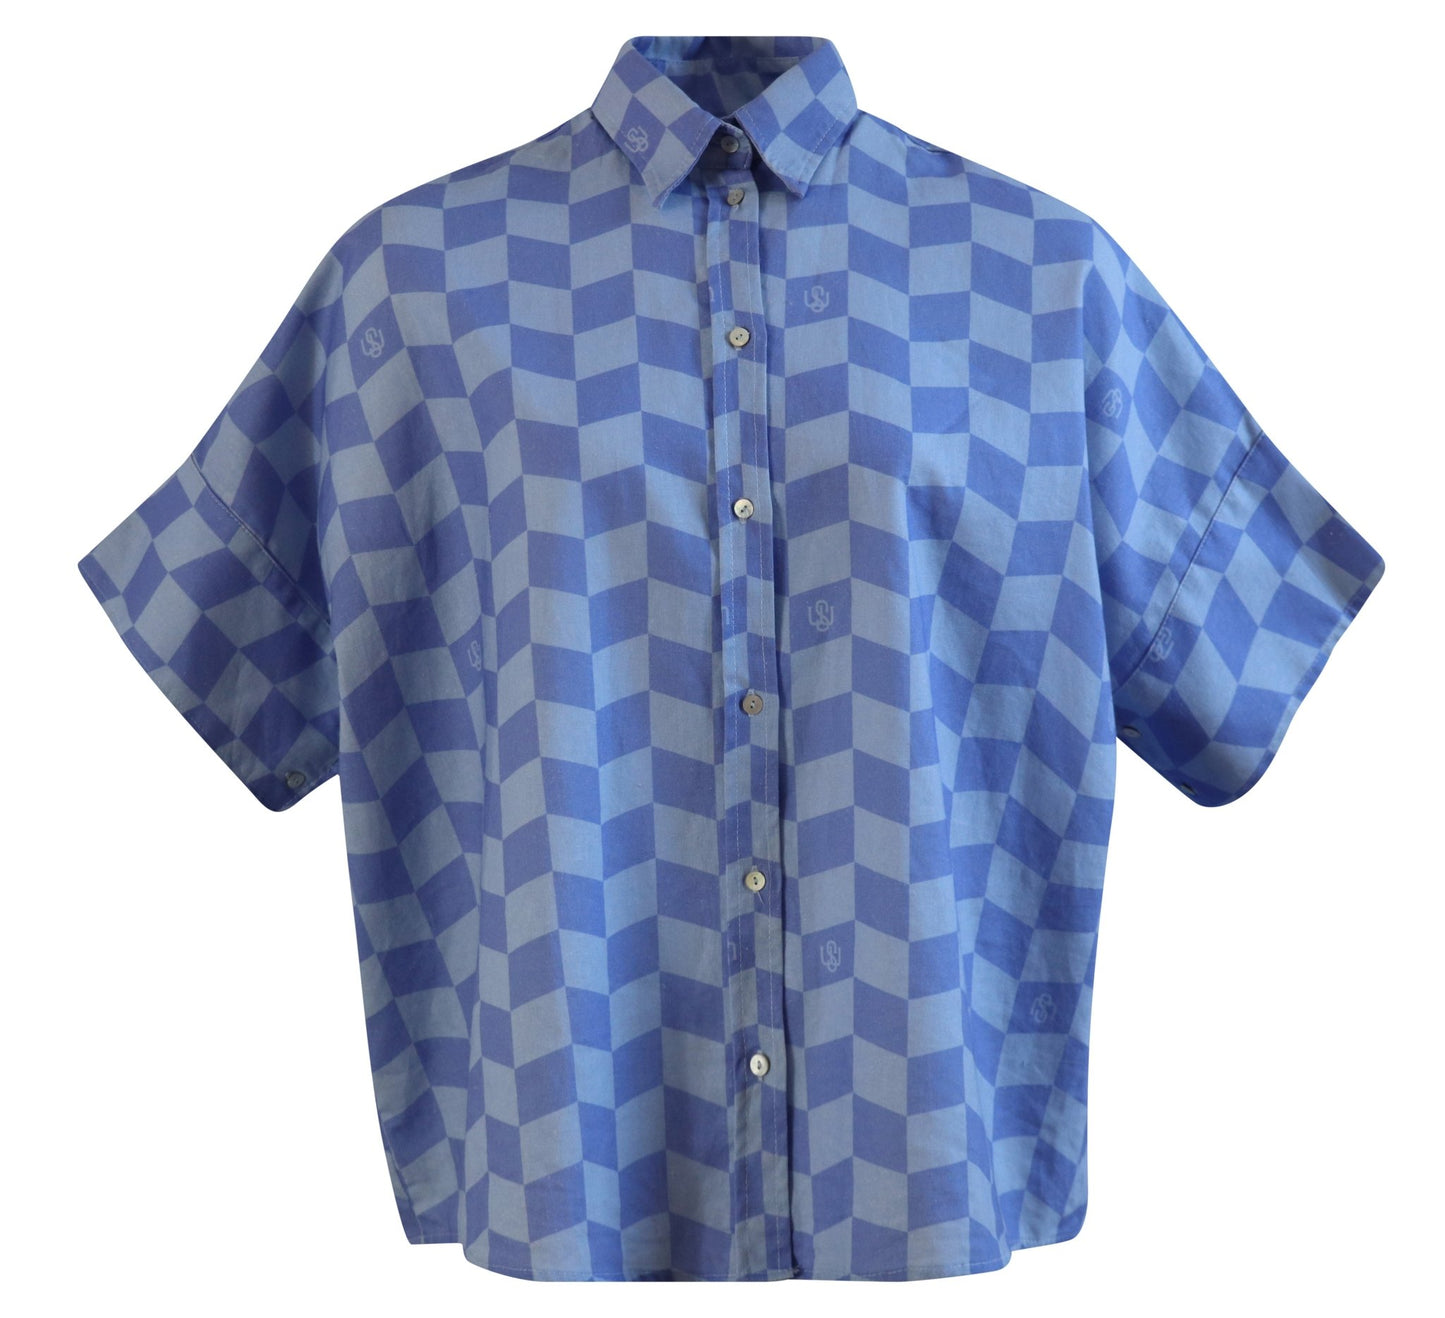 Tāhuna shirt - Blue Geometric - Sweepstake Winners™